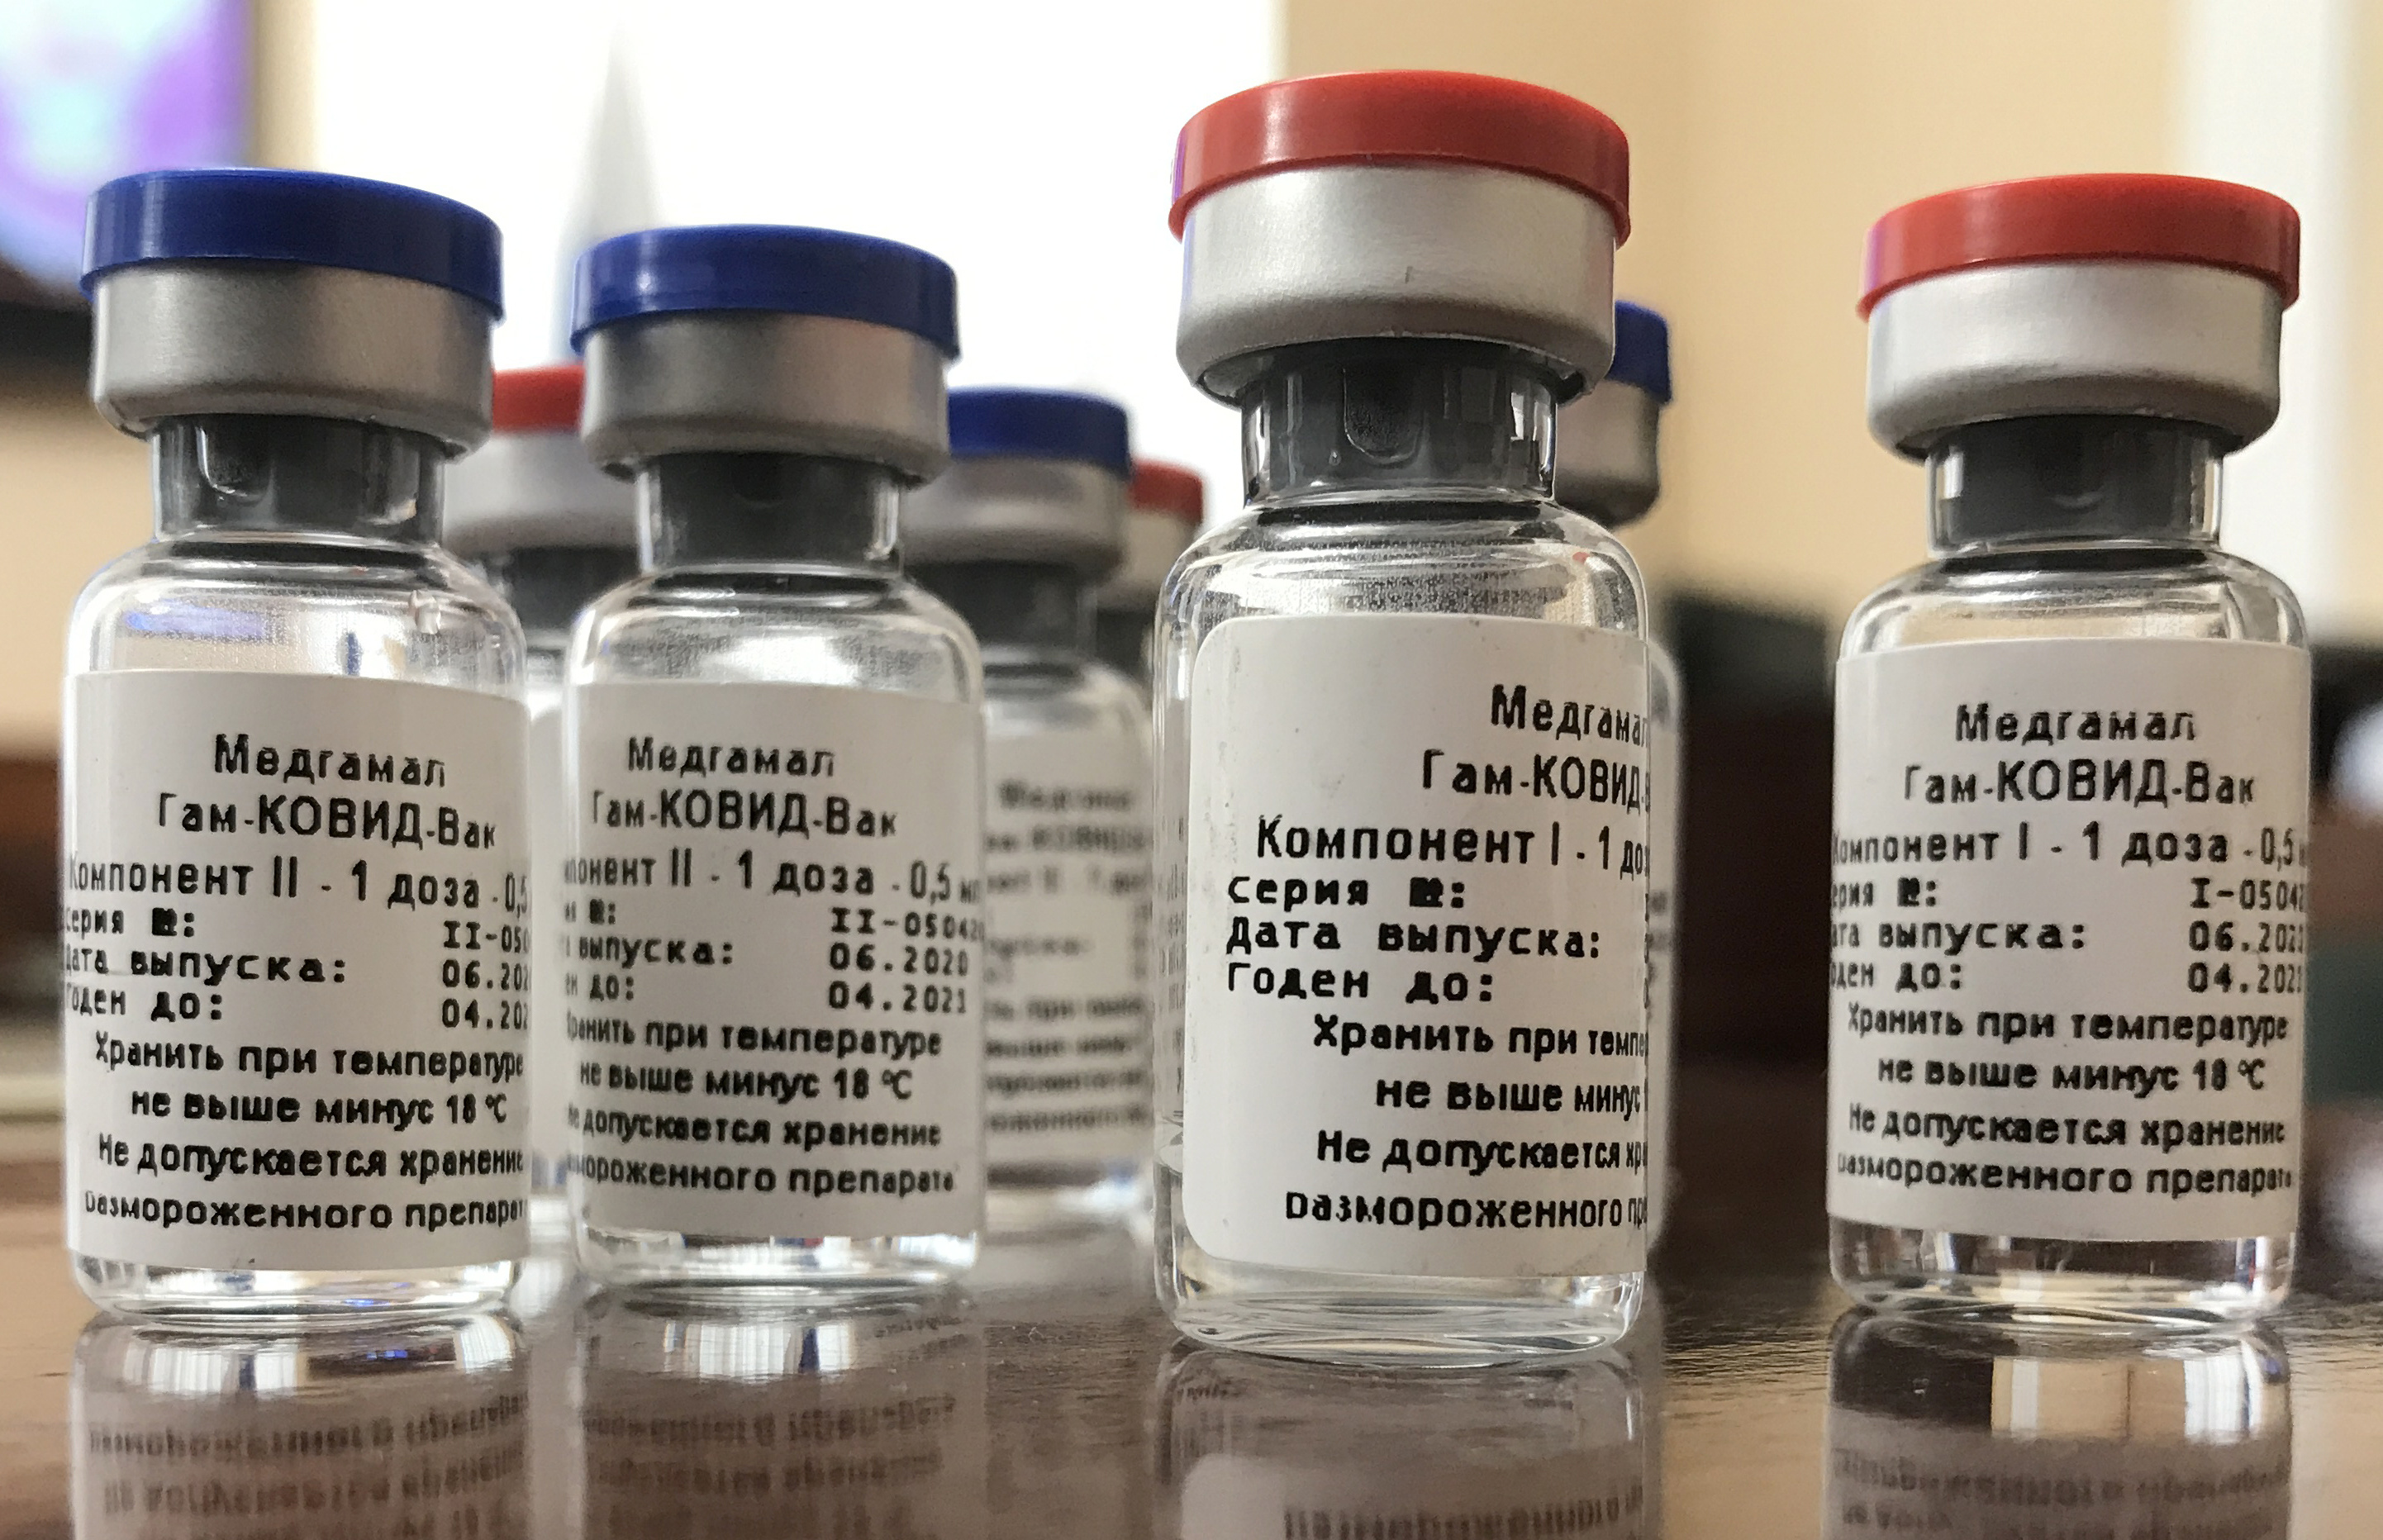 Дата вакцина. Вакцина. Российские вакцины. Вакцина от Ковида Спутник v. Российские вакцины от коронавируса Спутник v.